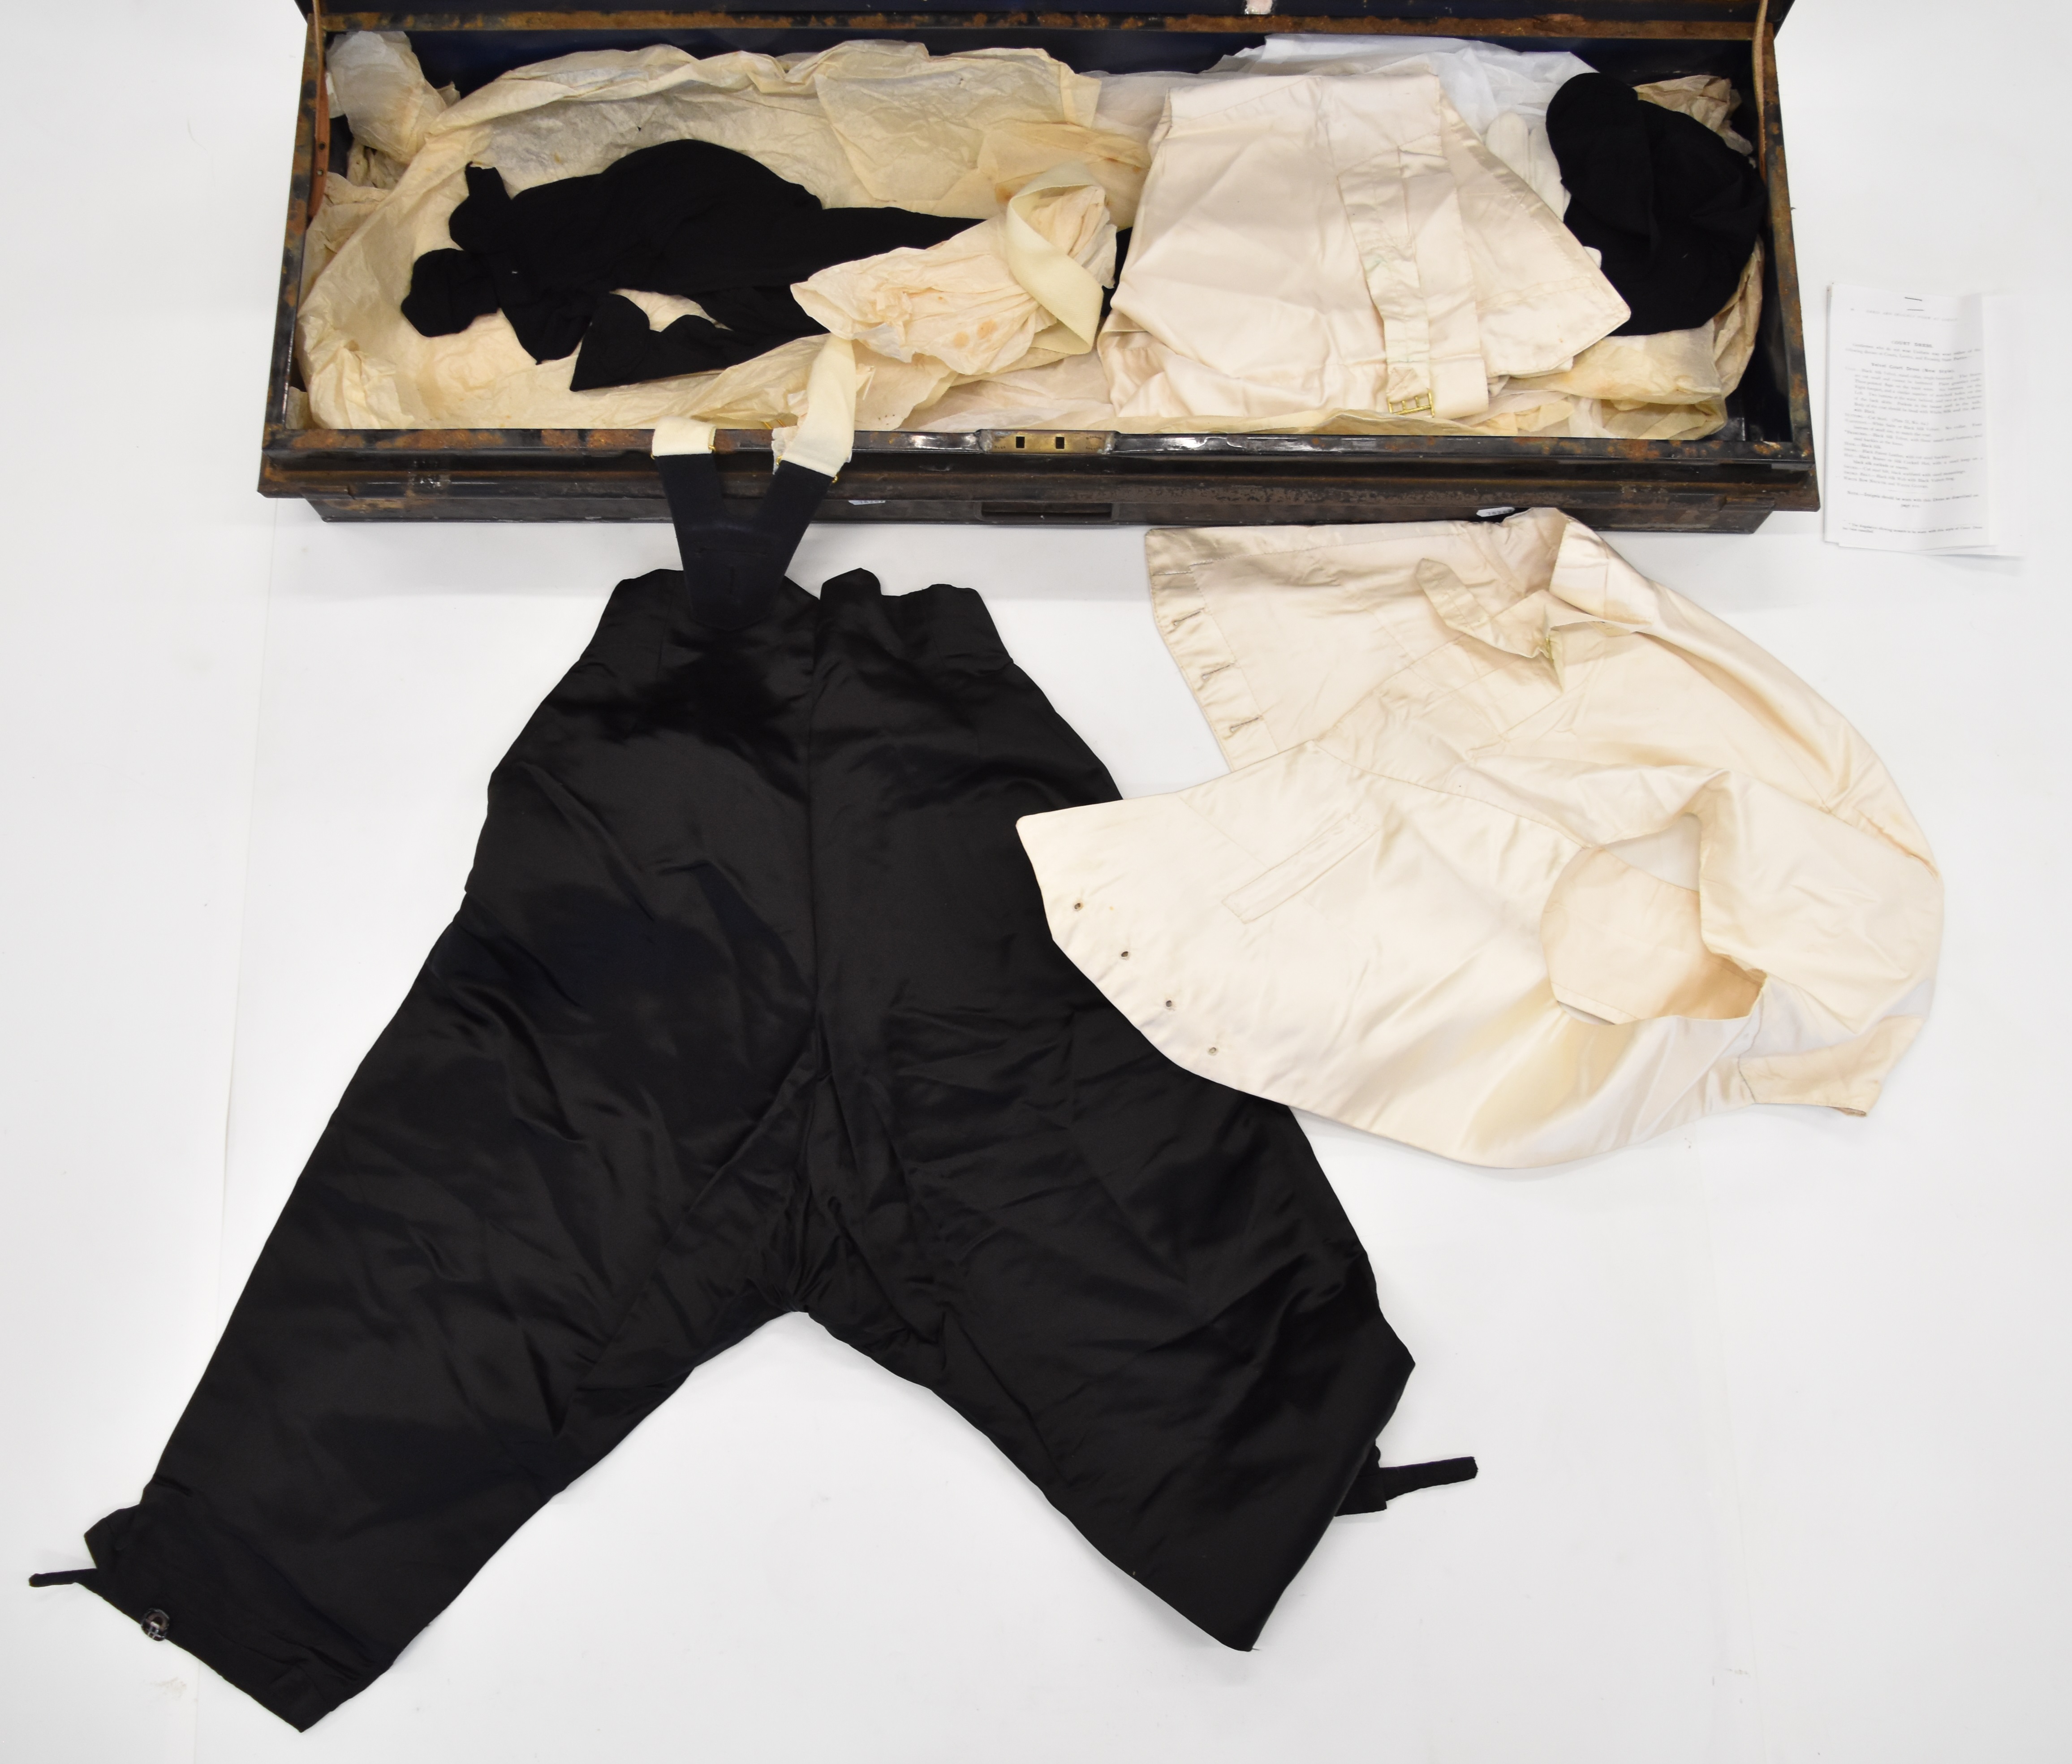 Early 20thC High Sheriff's uniform comprising black velvet coat, velvet breeches and waistcoat, - Image 9 of 20